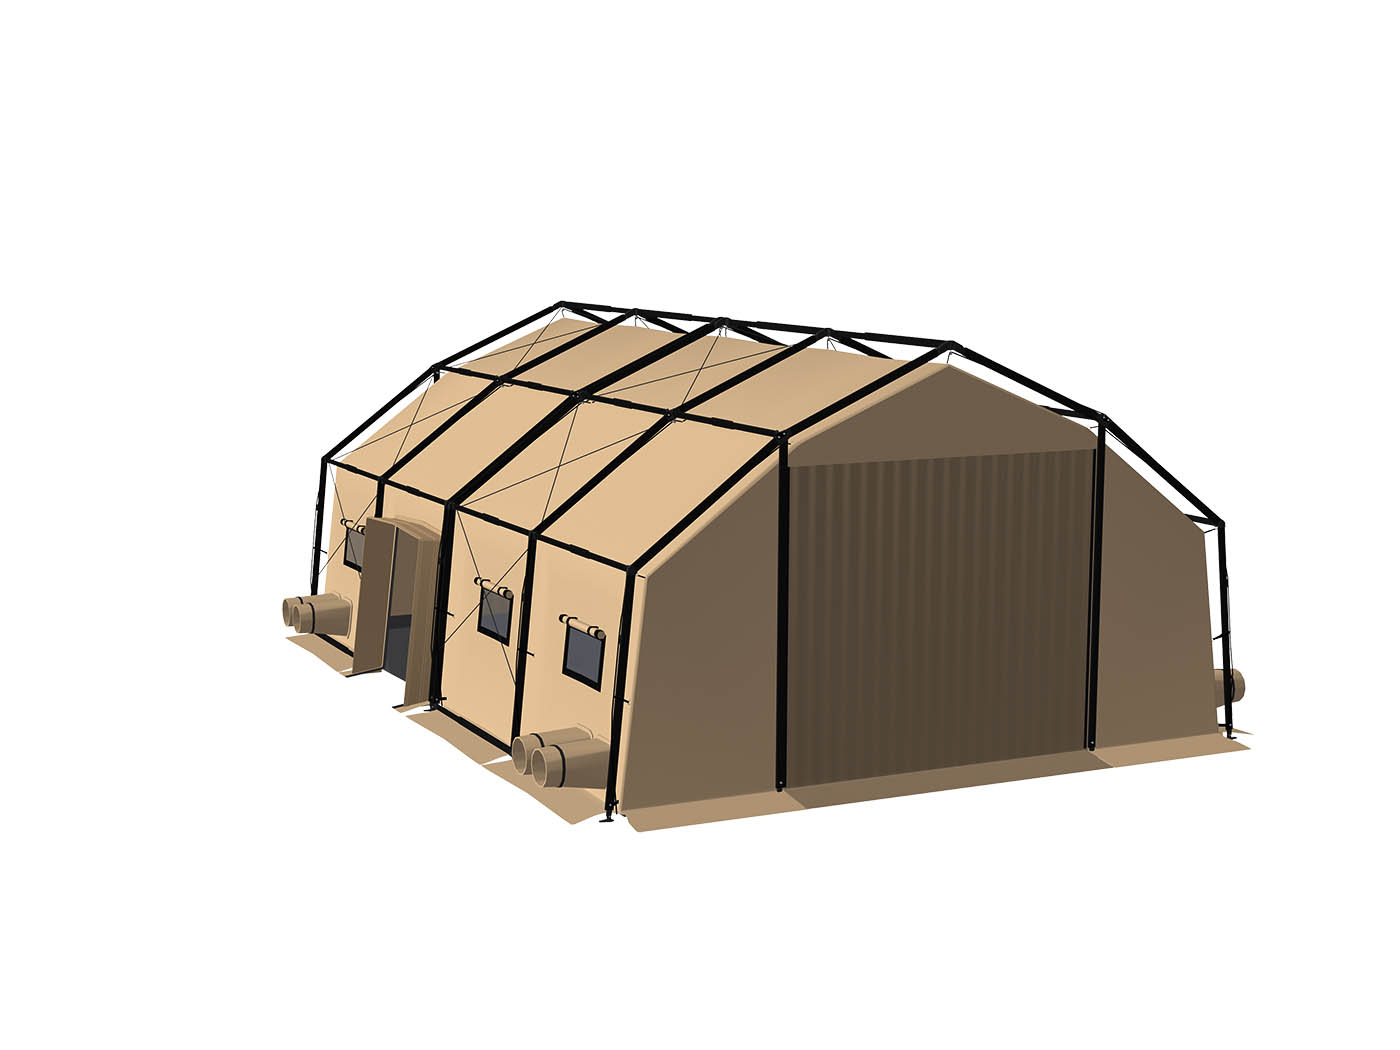 Tente militaire GV4, modèle GV4